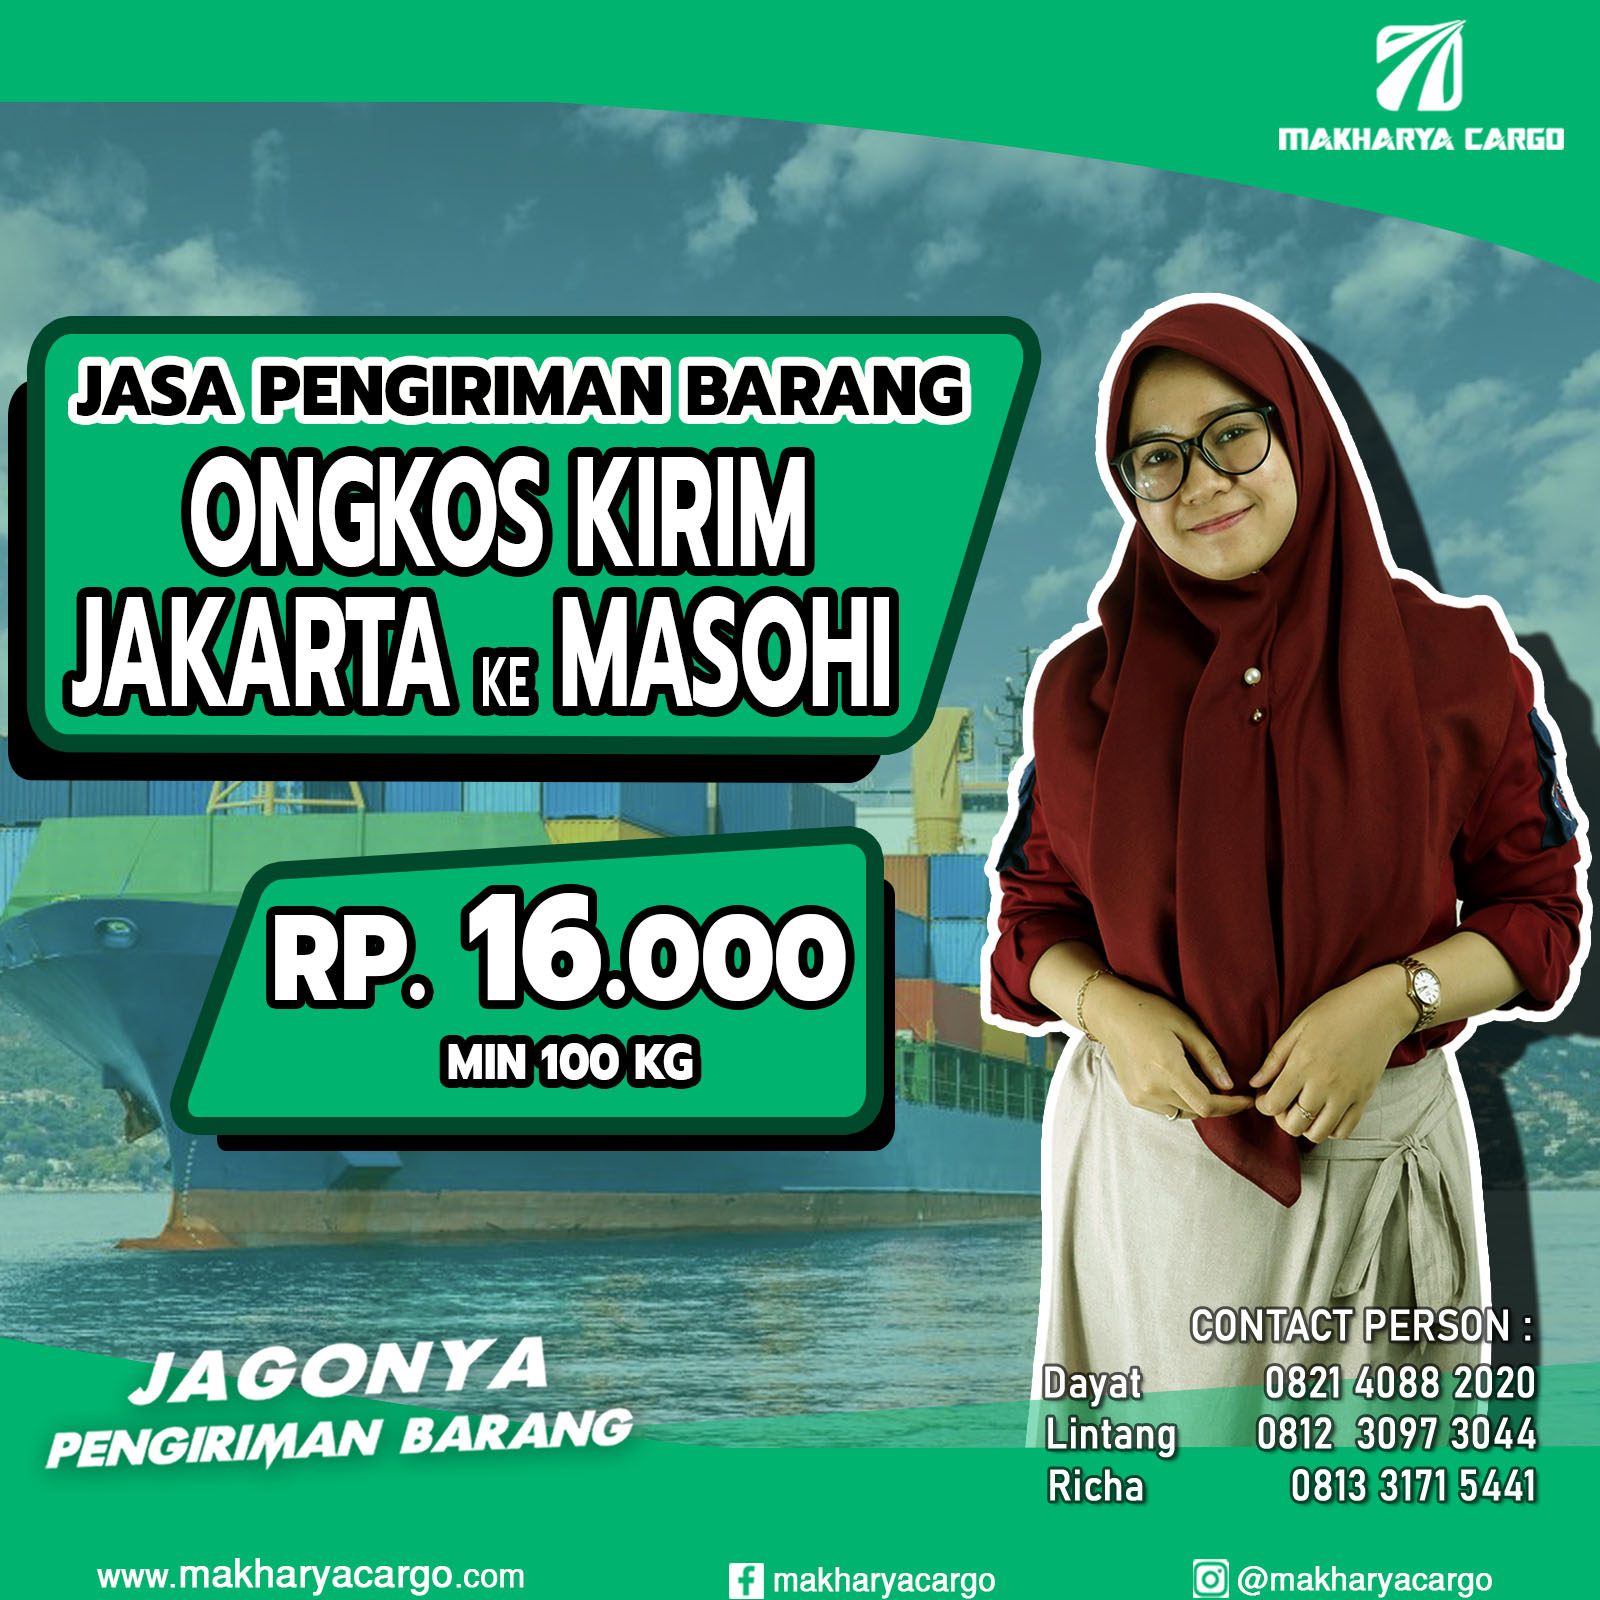 Ongkos Kirim Jakarta Masohi